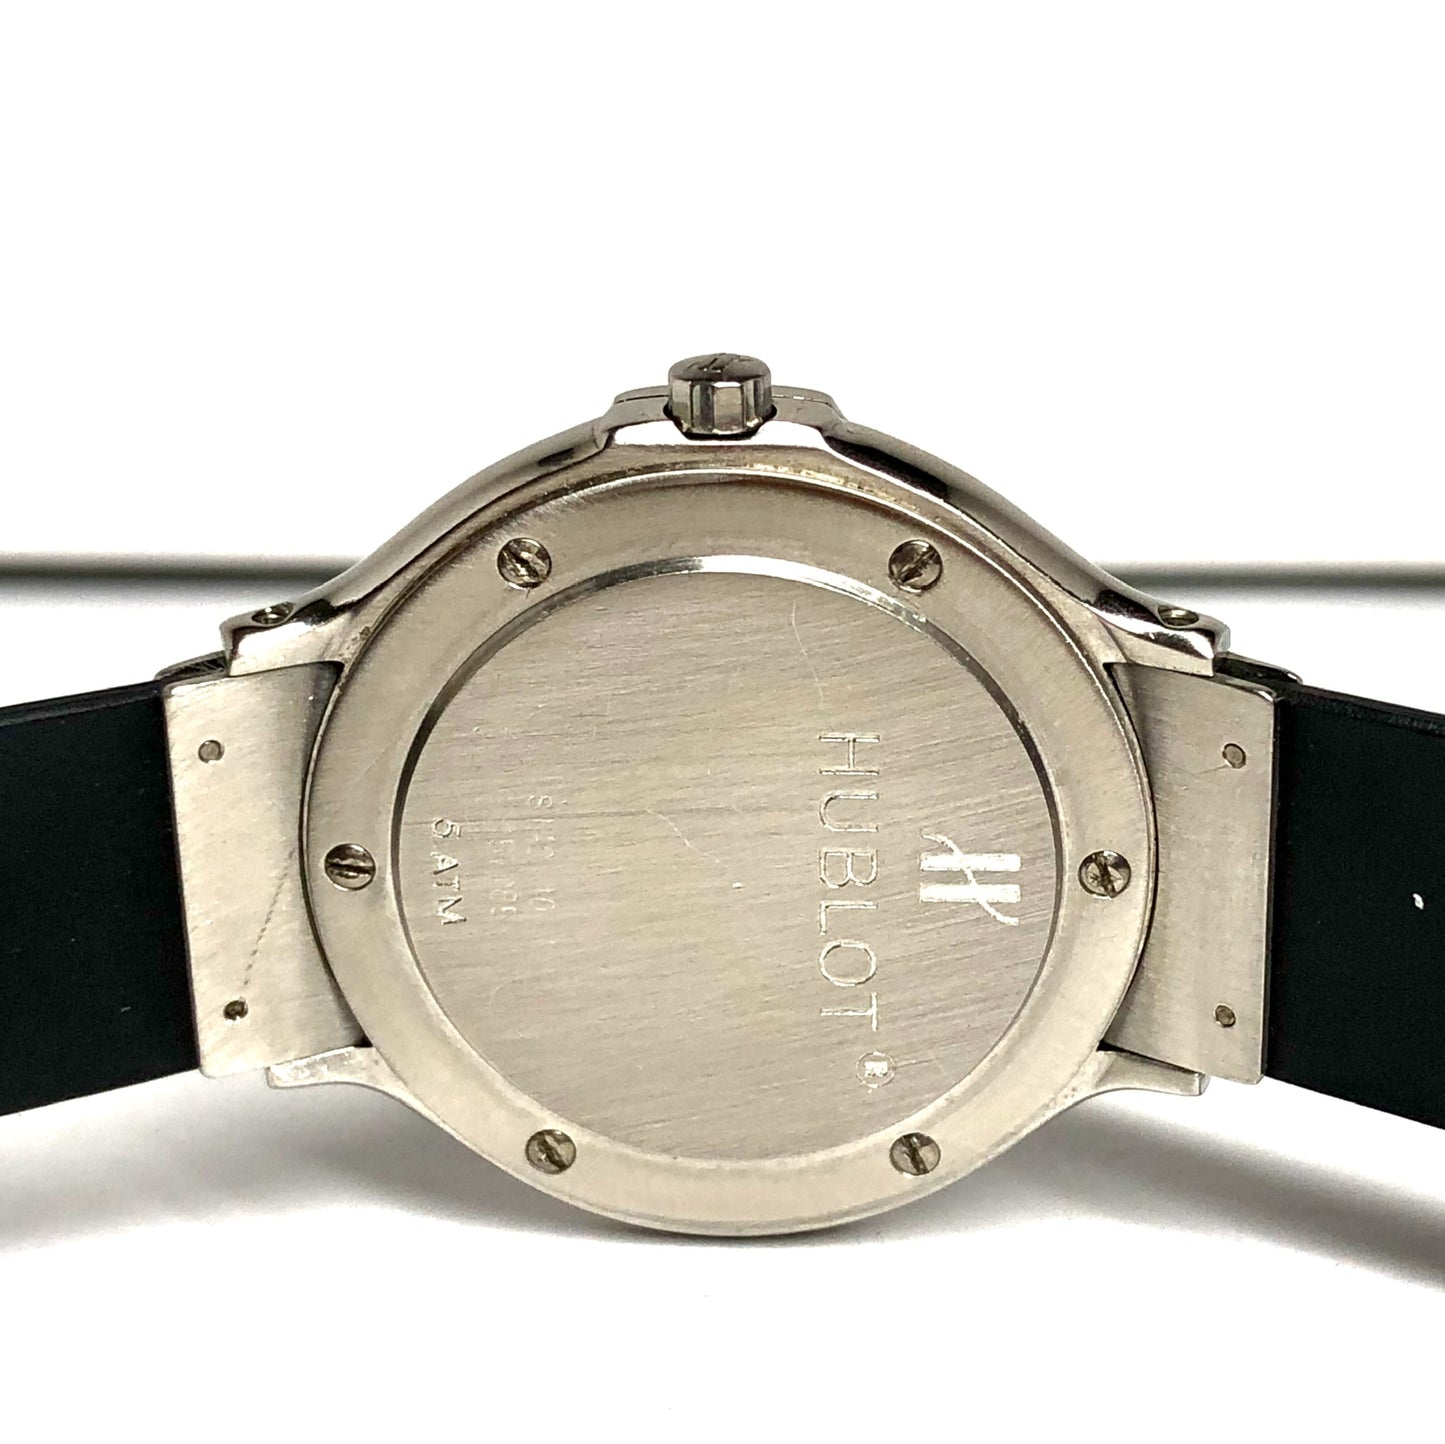 HUBLOT MDM 140.10.1 Quartz Steel 31mm 0.66TCW DIAMOND Watch